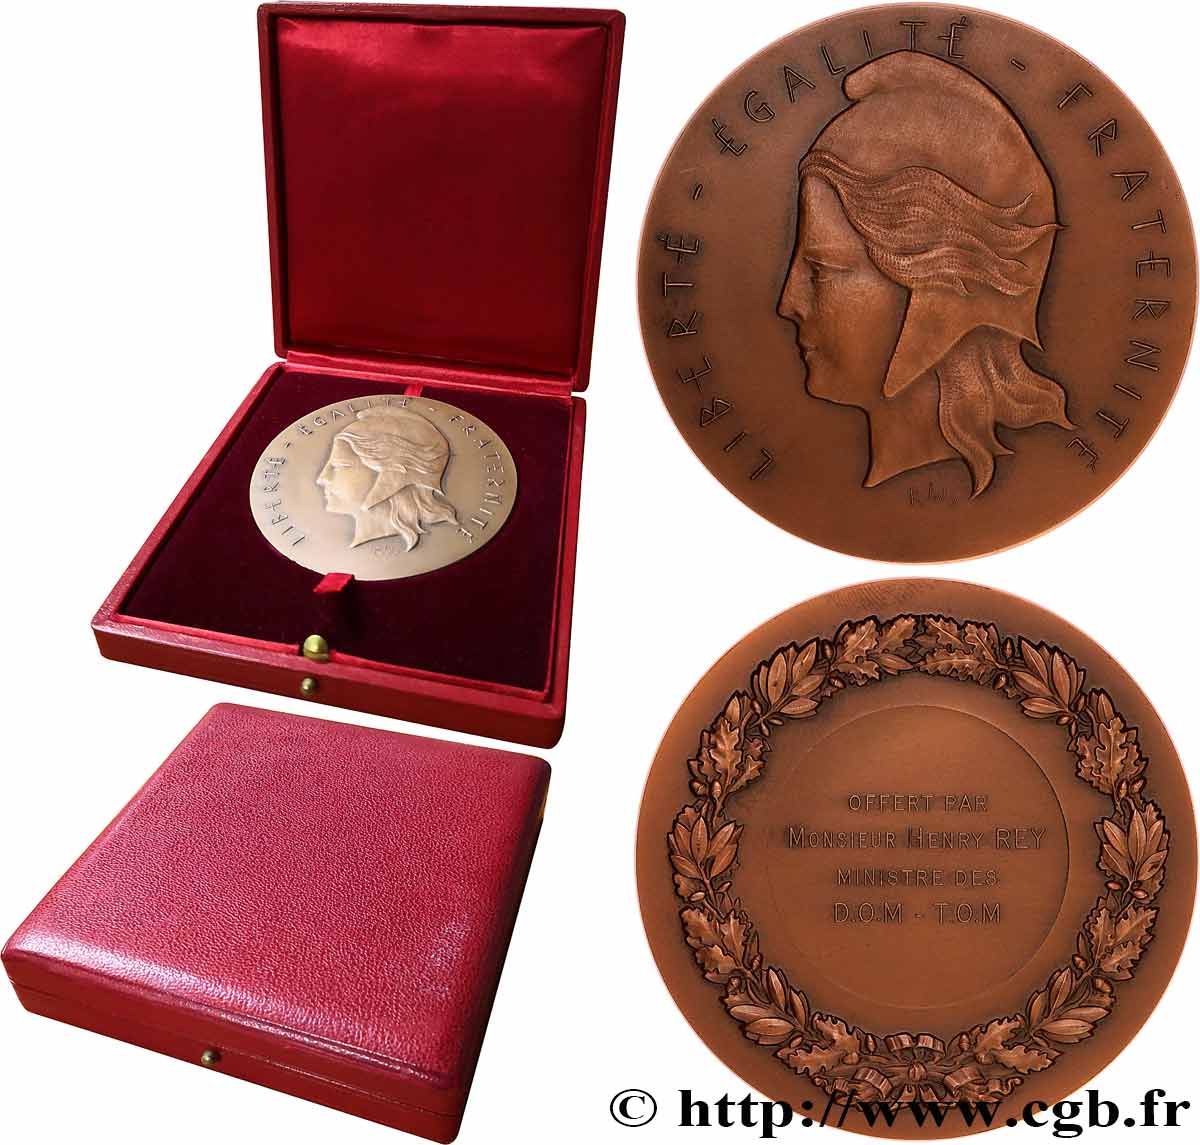 QUINTA REPUBBLICA FRANCESE Médaille, offerte par le ministre des D.O.M.-T.O.M. SPL